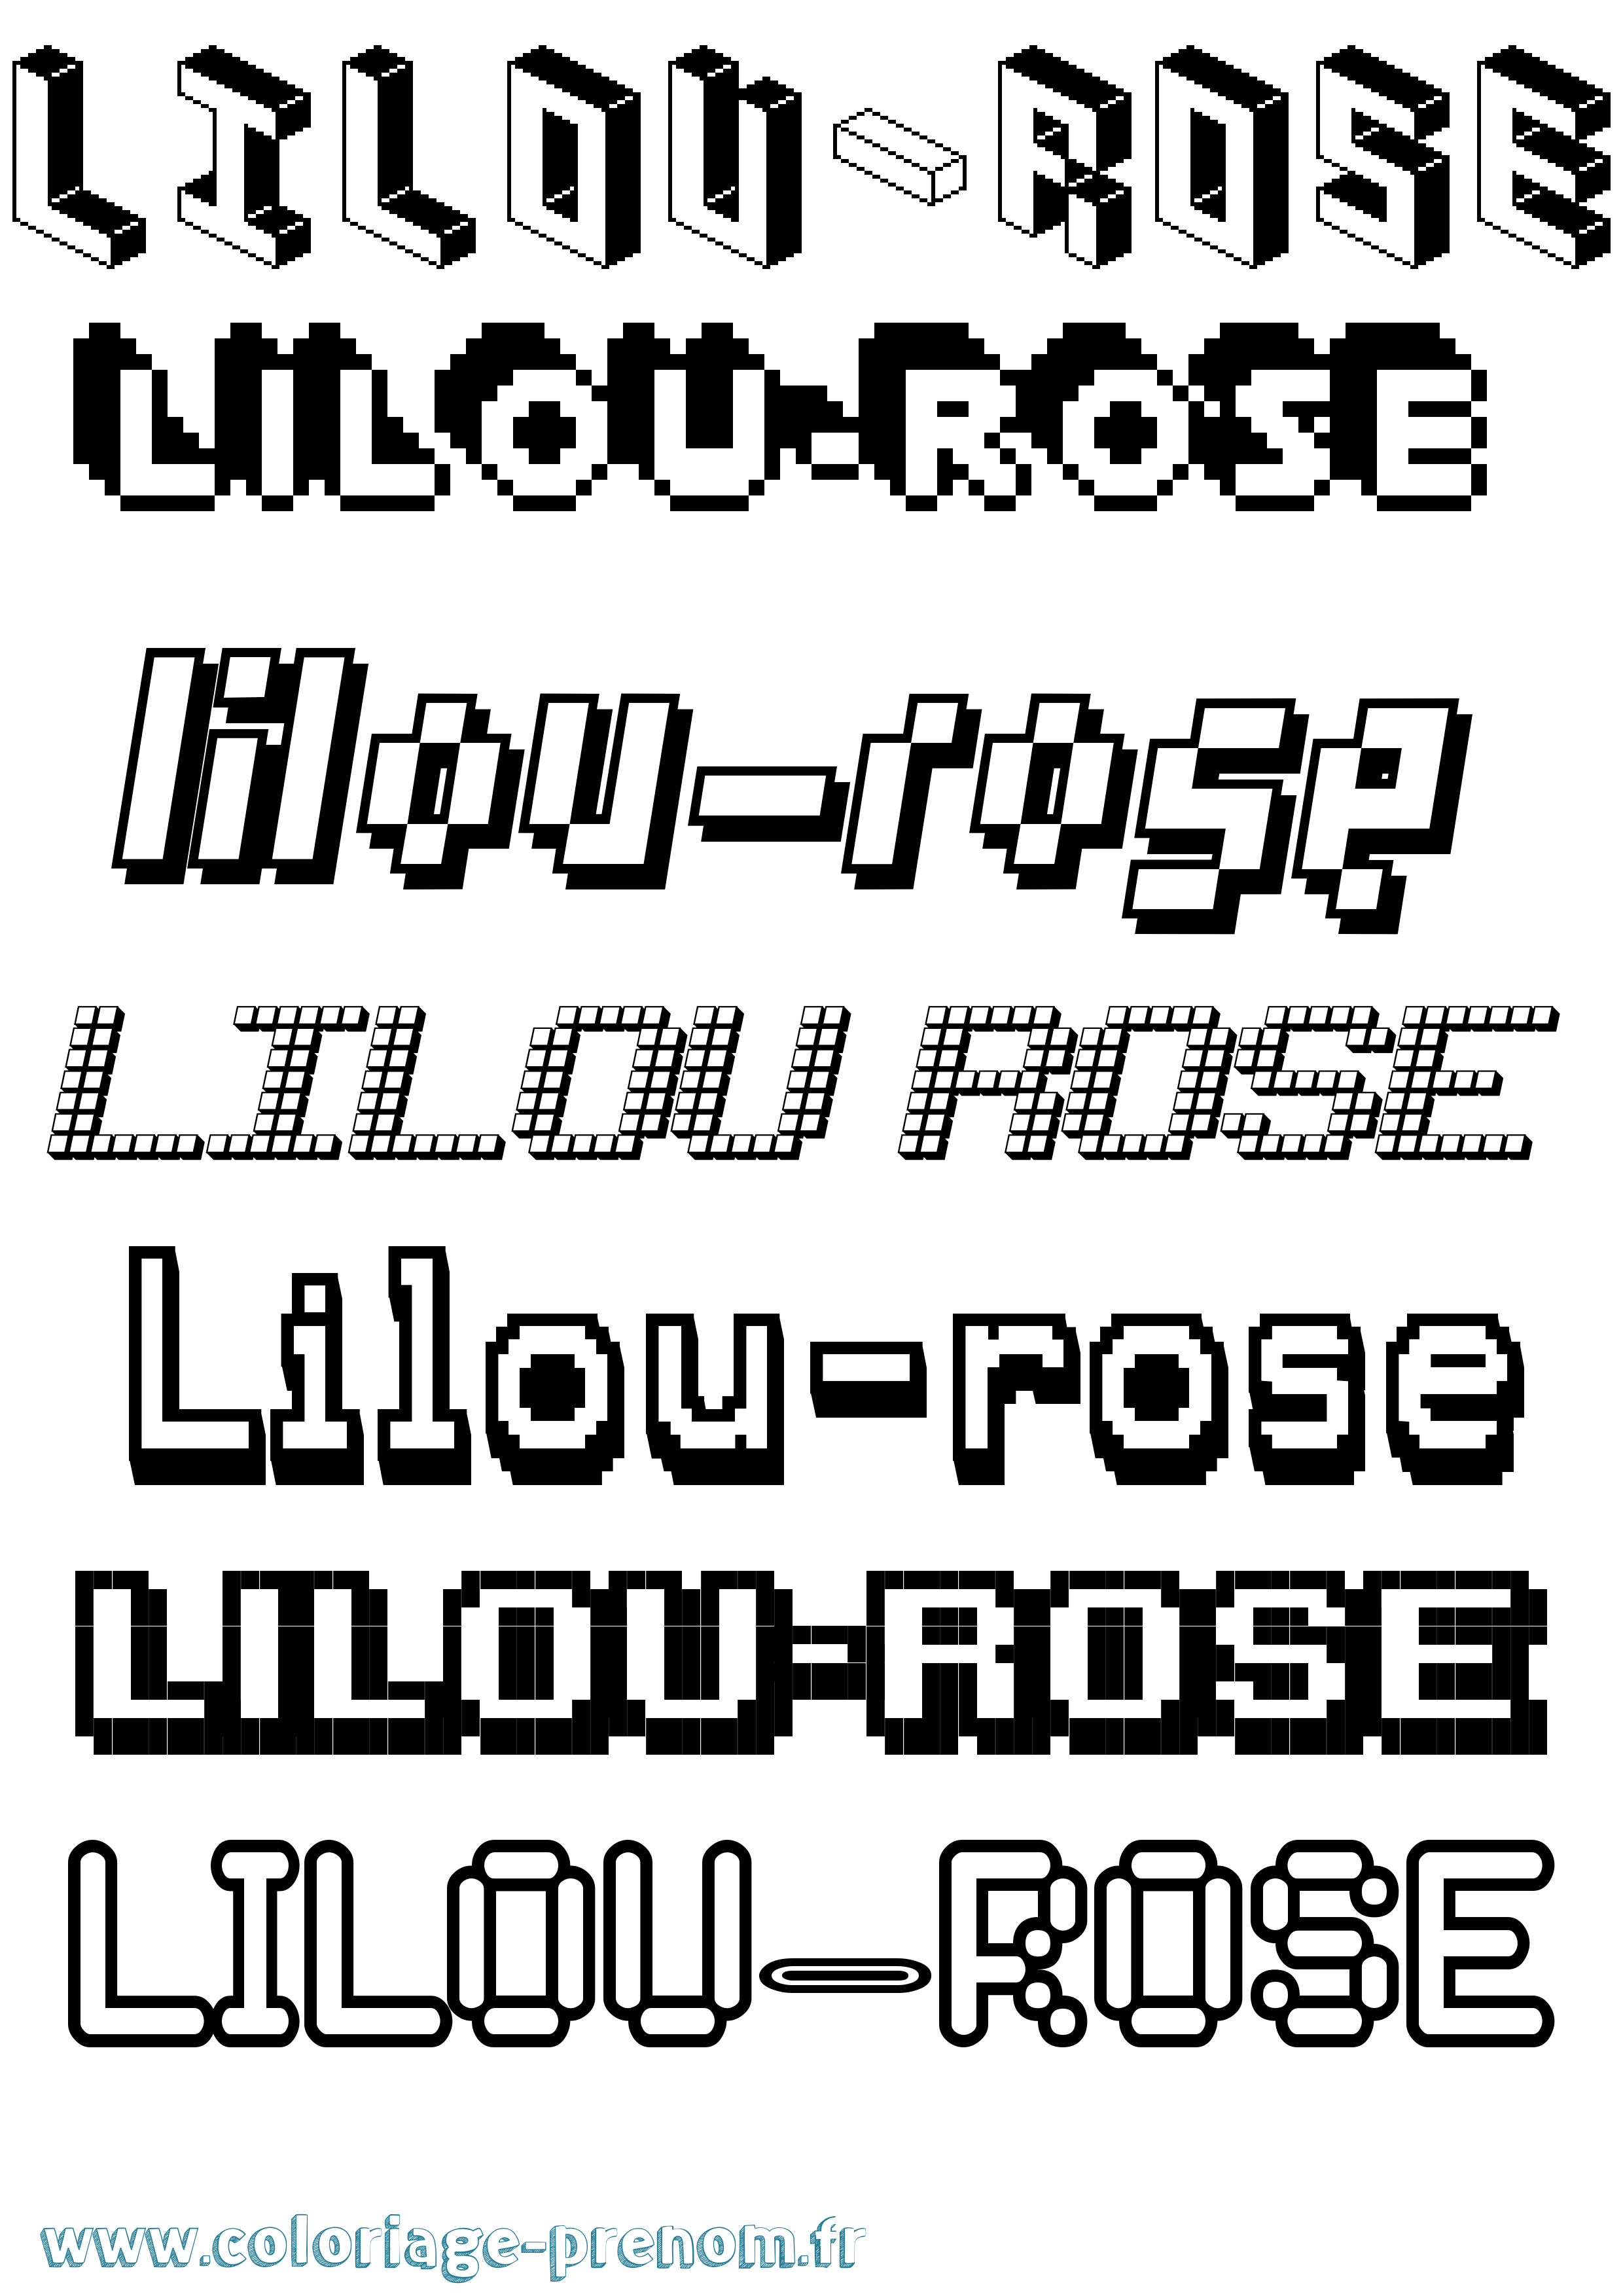 Coloriage prénom Lilou-Rose Pixel